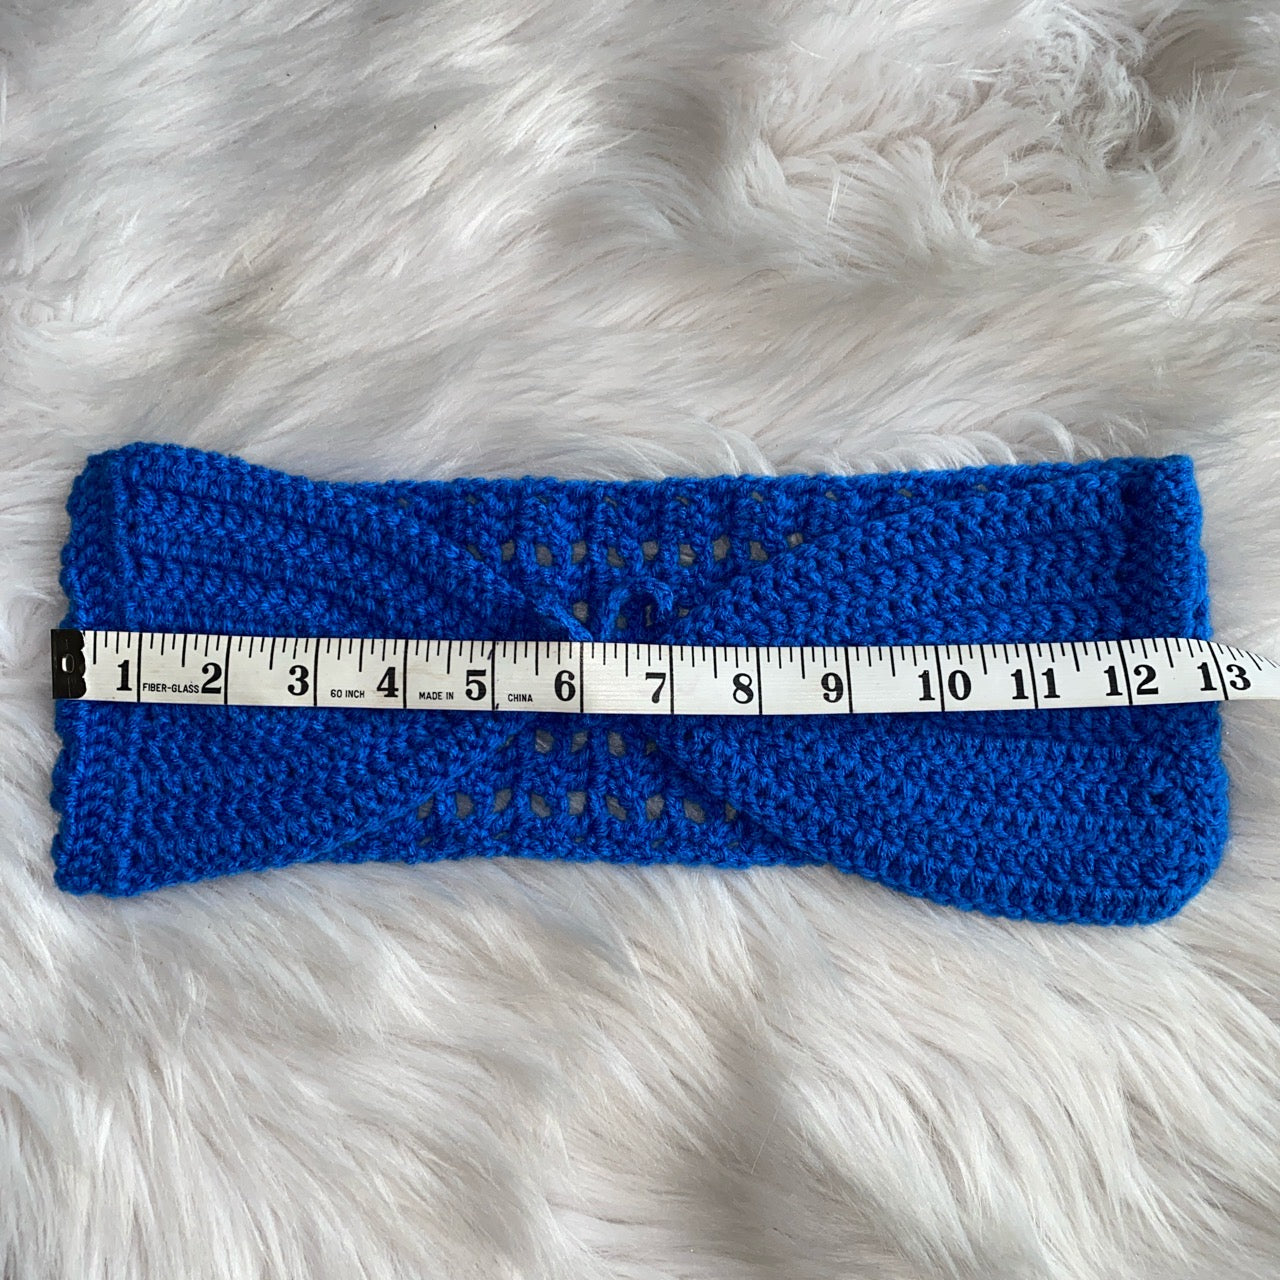 Shopdigitalgirl | Crochet Sets | Royal Blue Bikini